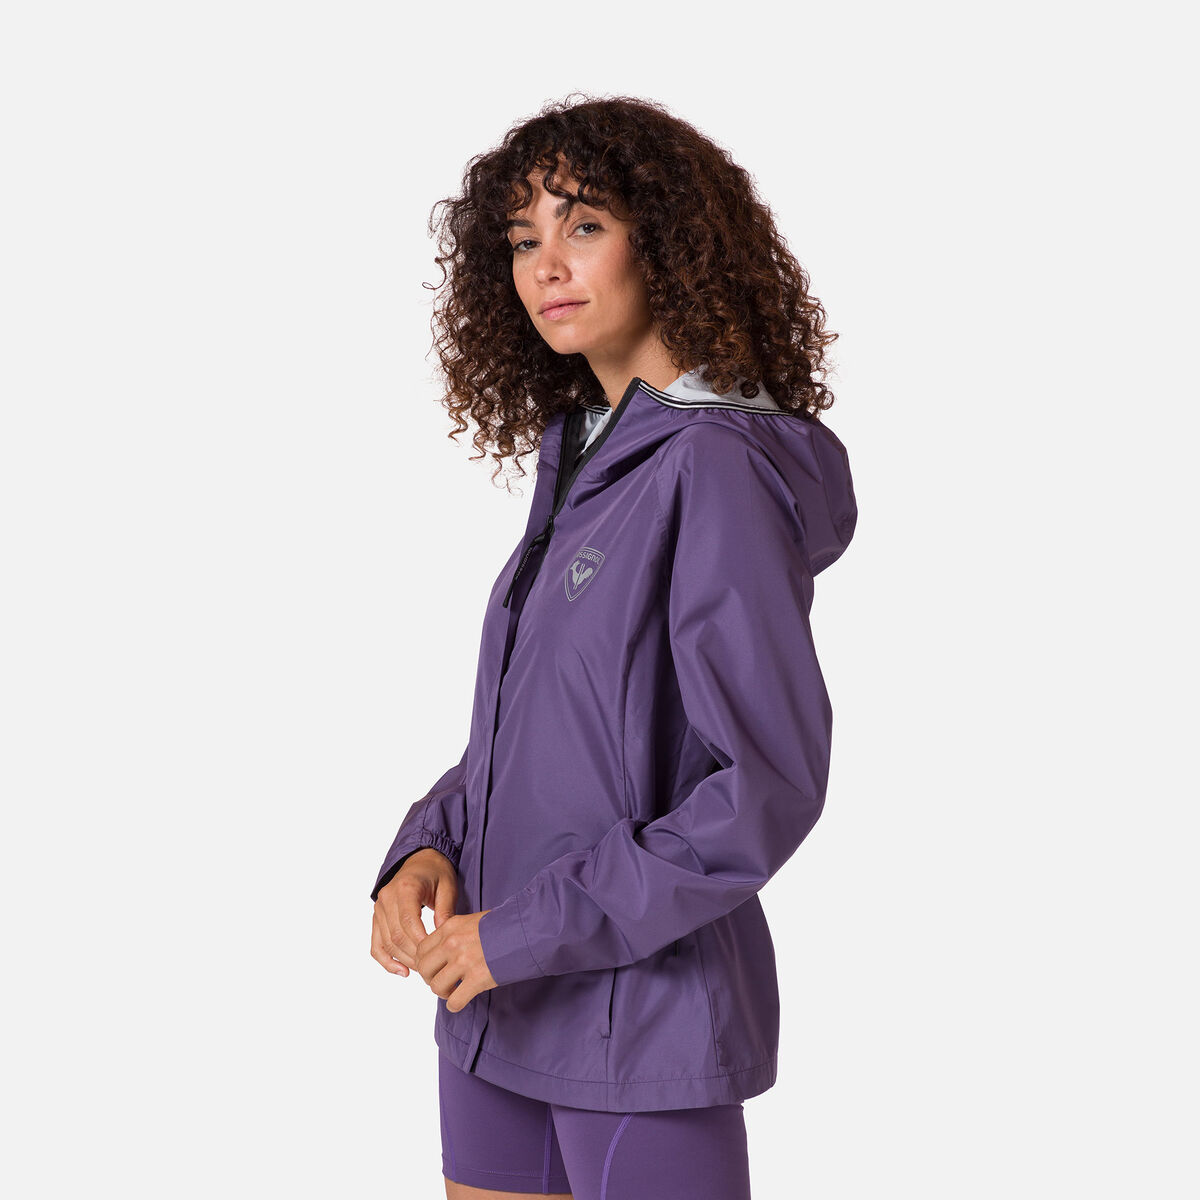 Rossignol Women's Active Rain Jacket Pink/Purple